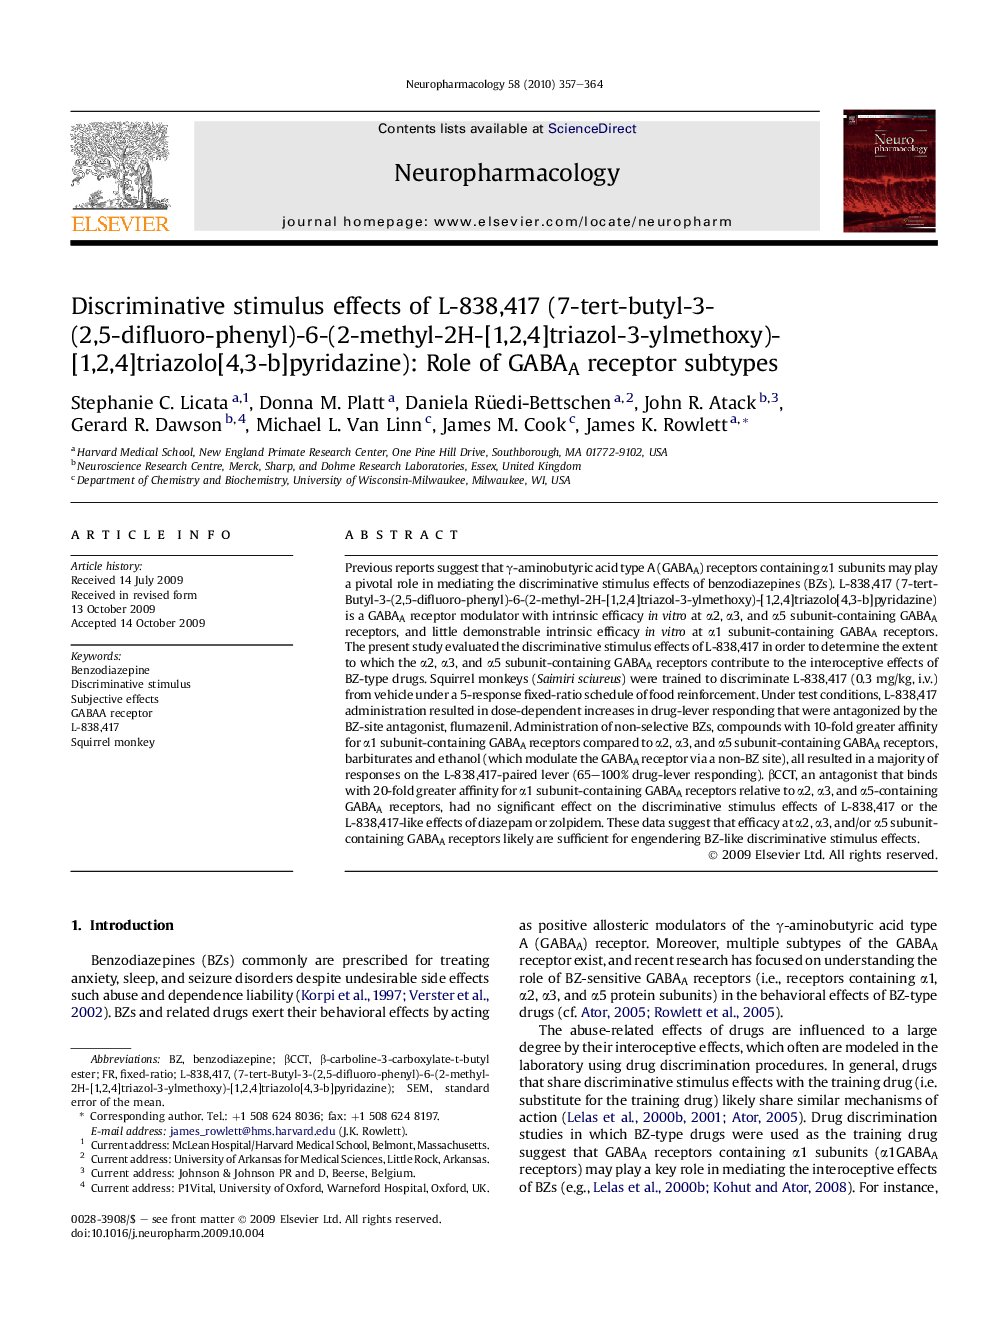 Discriminative stimulus effects of L-838,417 (7-tert-butyl-3-(2,5-difluoro-phenyl)-6-(2-methyl-2H-[1,2,4]triazol-3-ylmethoxy)-[1,2,4]triazolo[4,3-b]pyridazine): Role of GABAA receptor subtypes